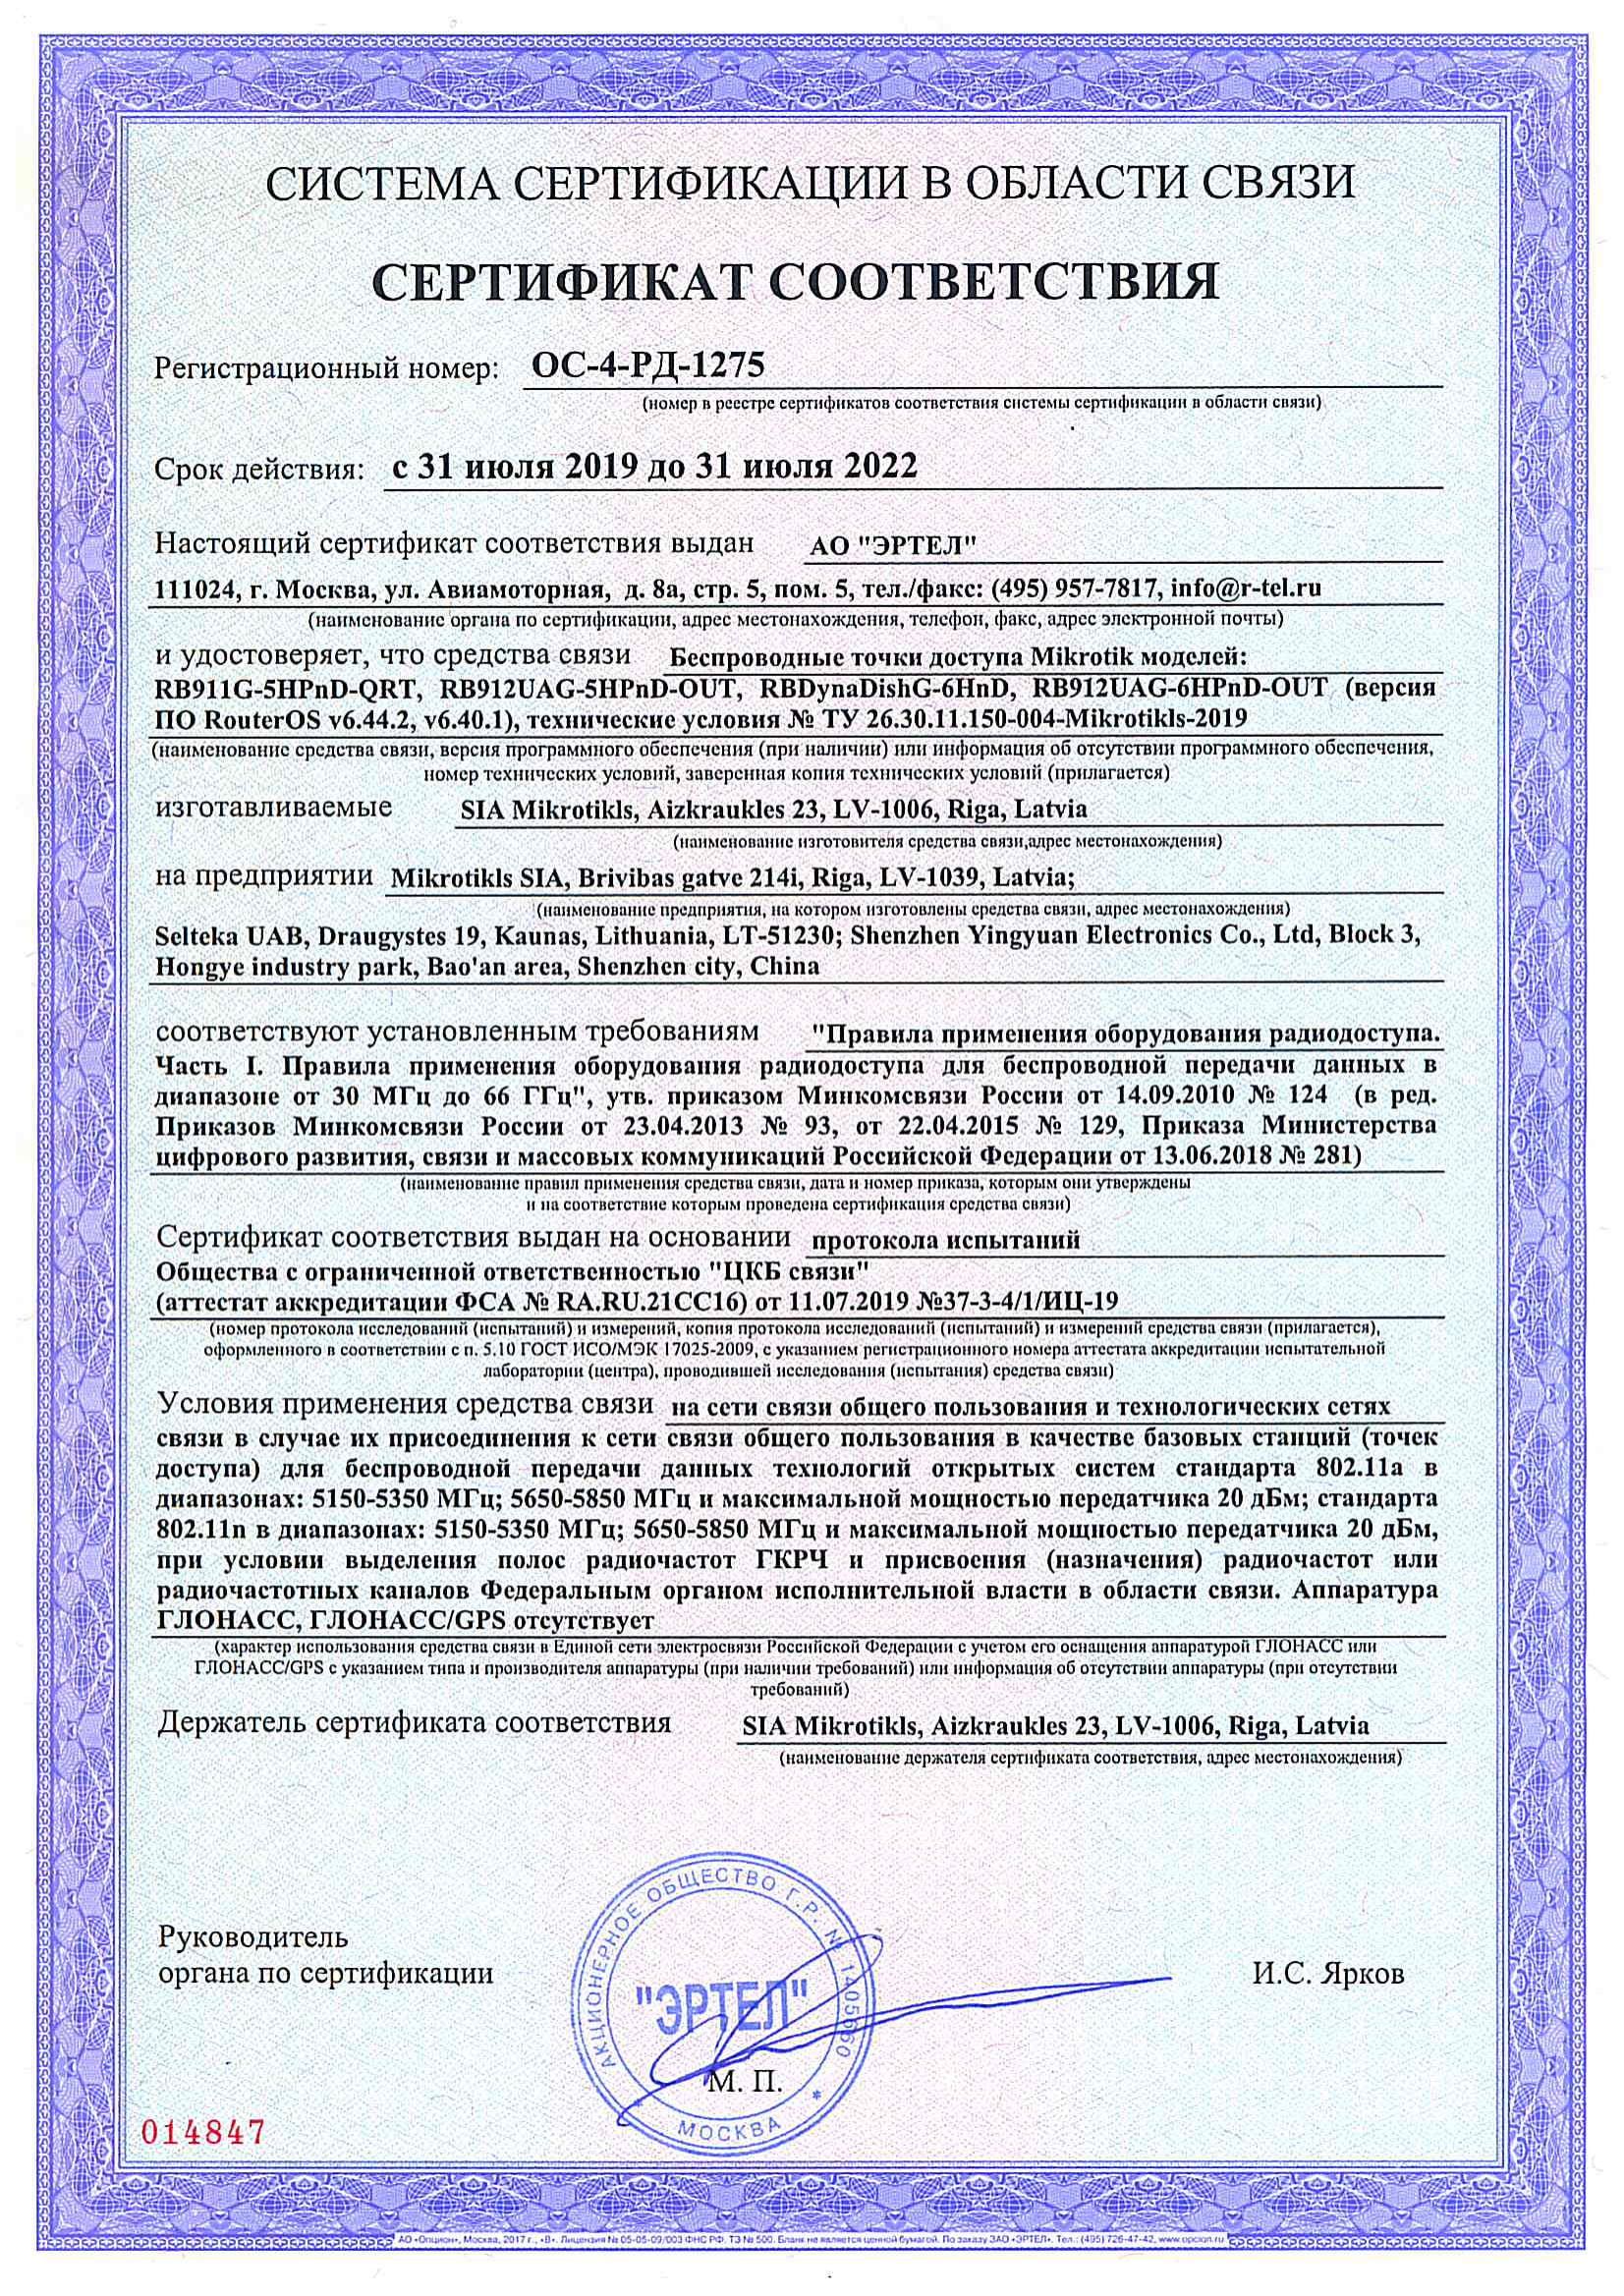 Сертификат соответствия в области связи ОС-4-РД-1275